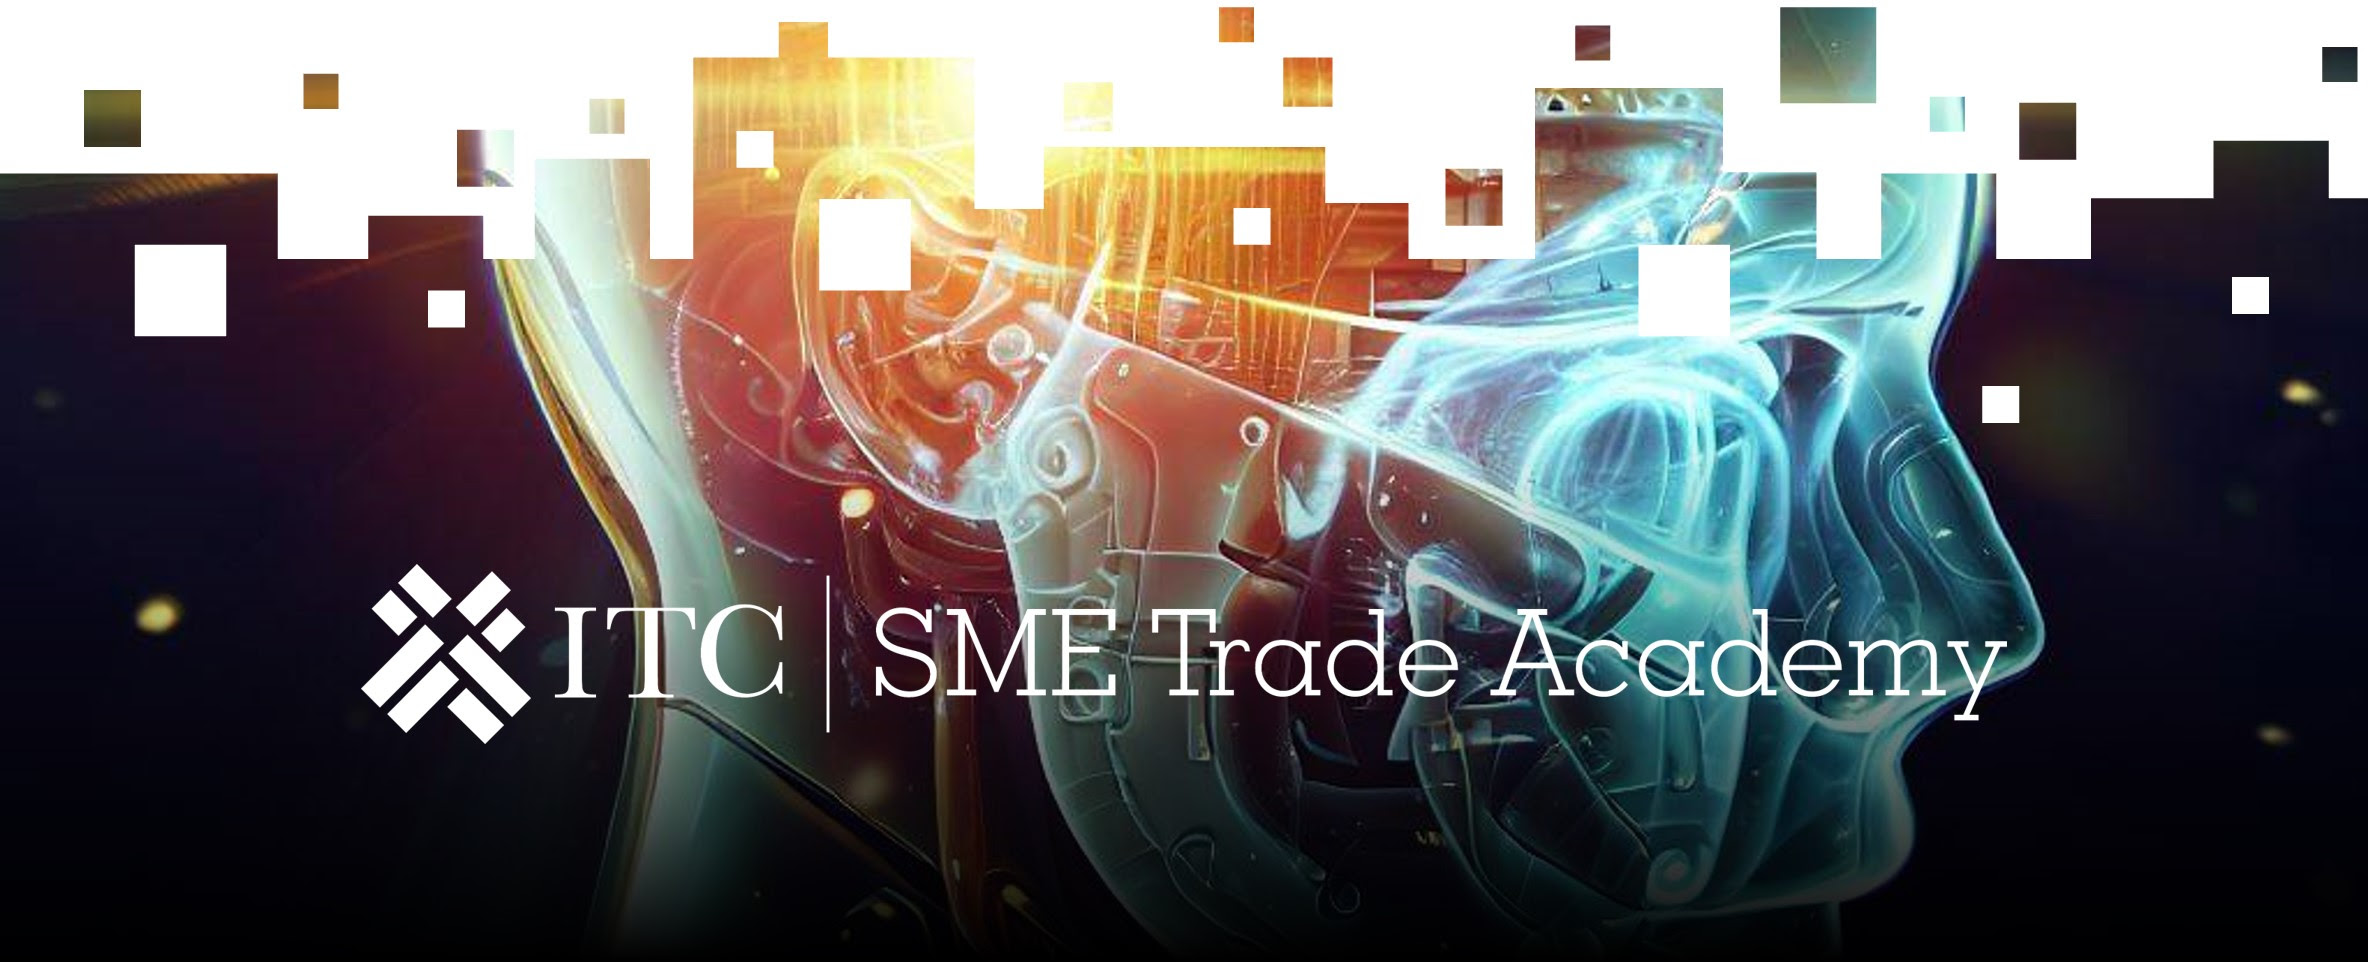 ITC | SME Trade Academy